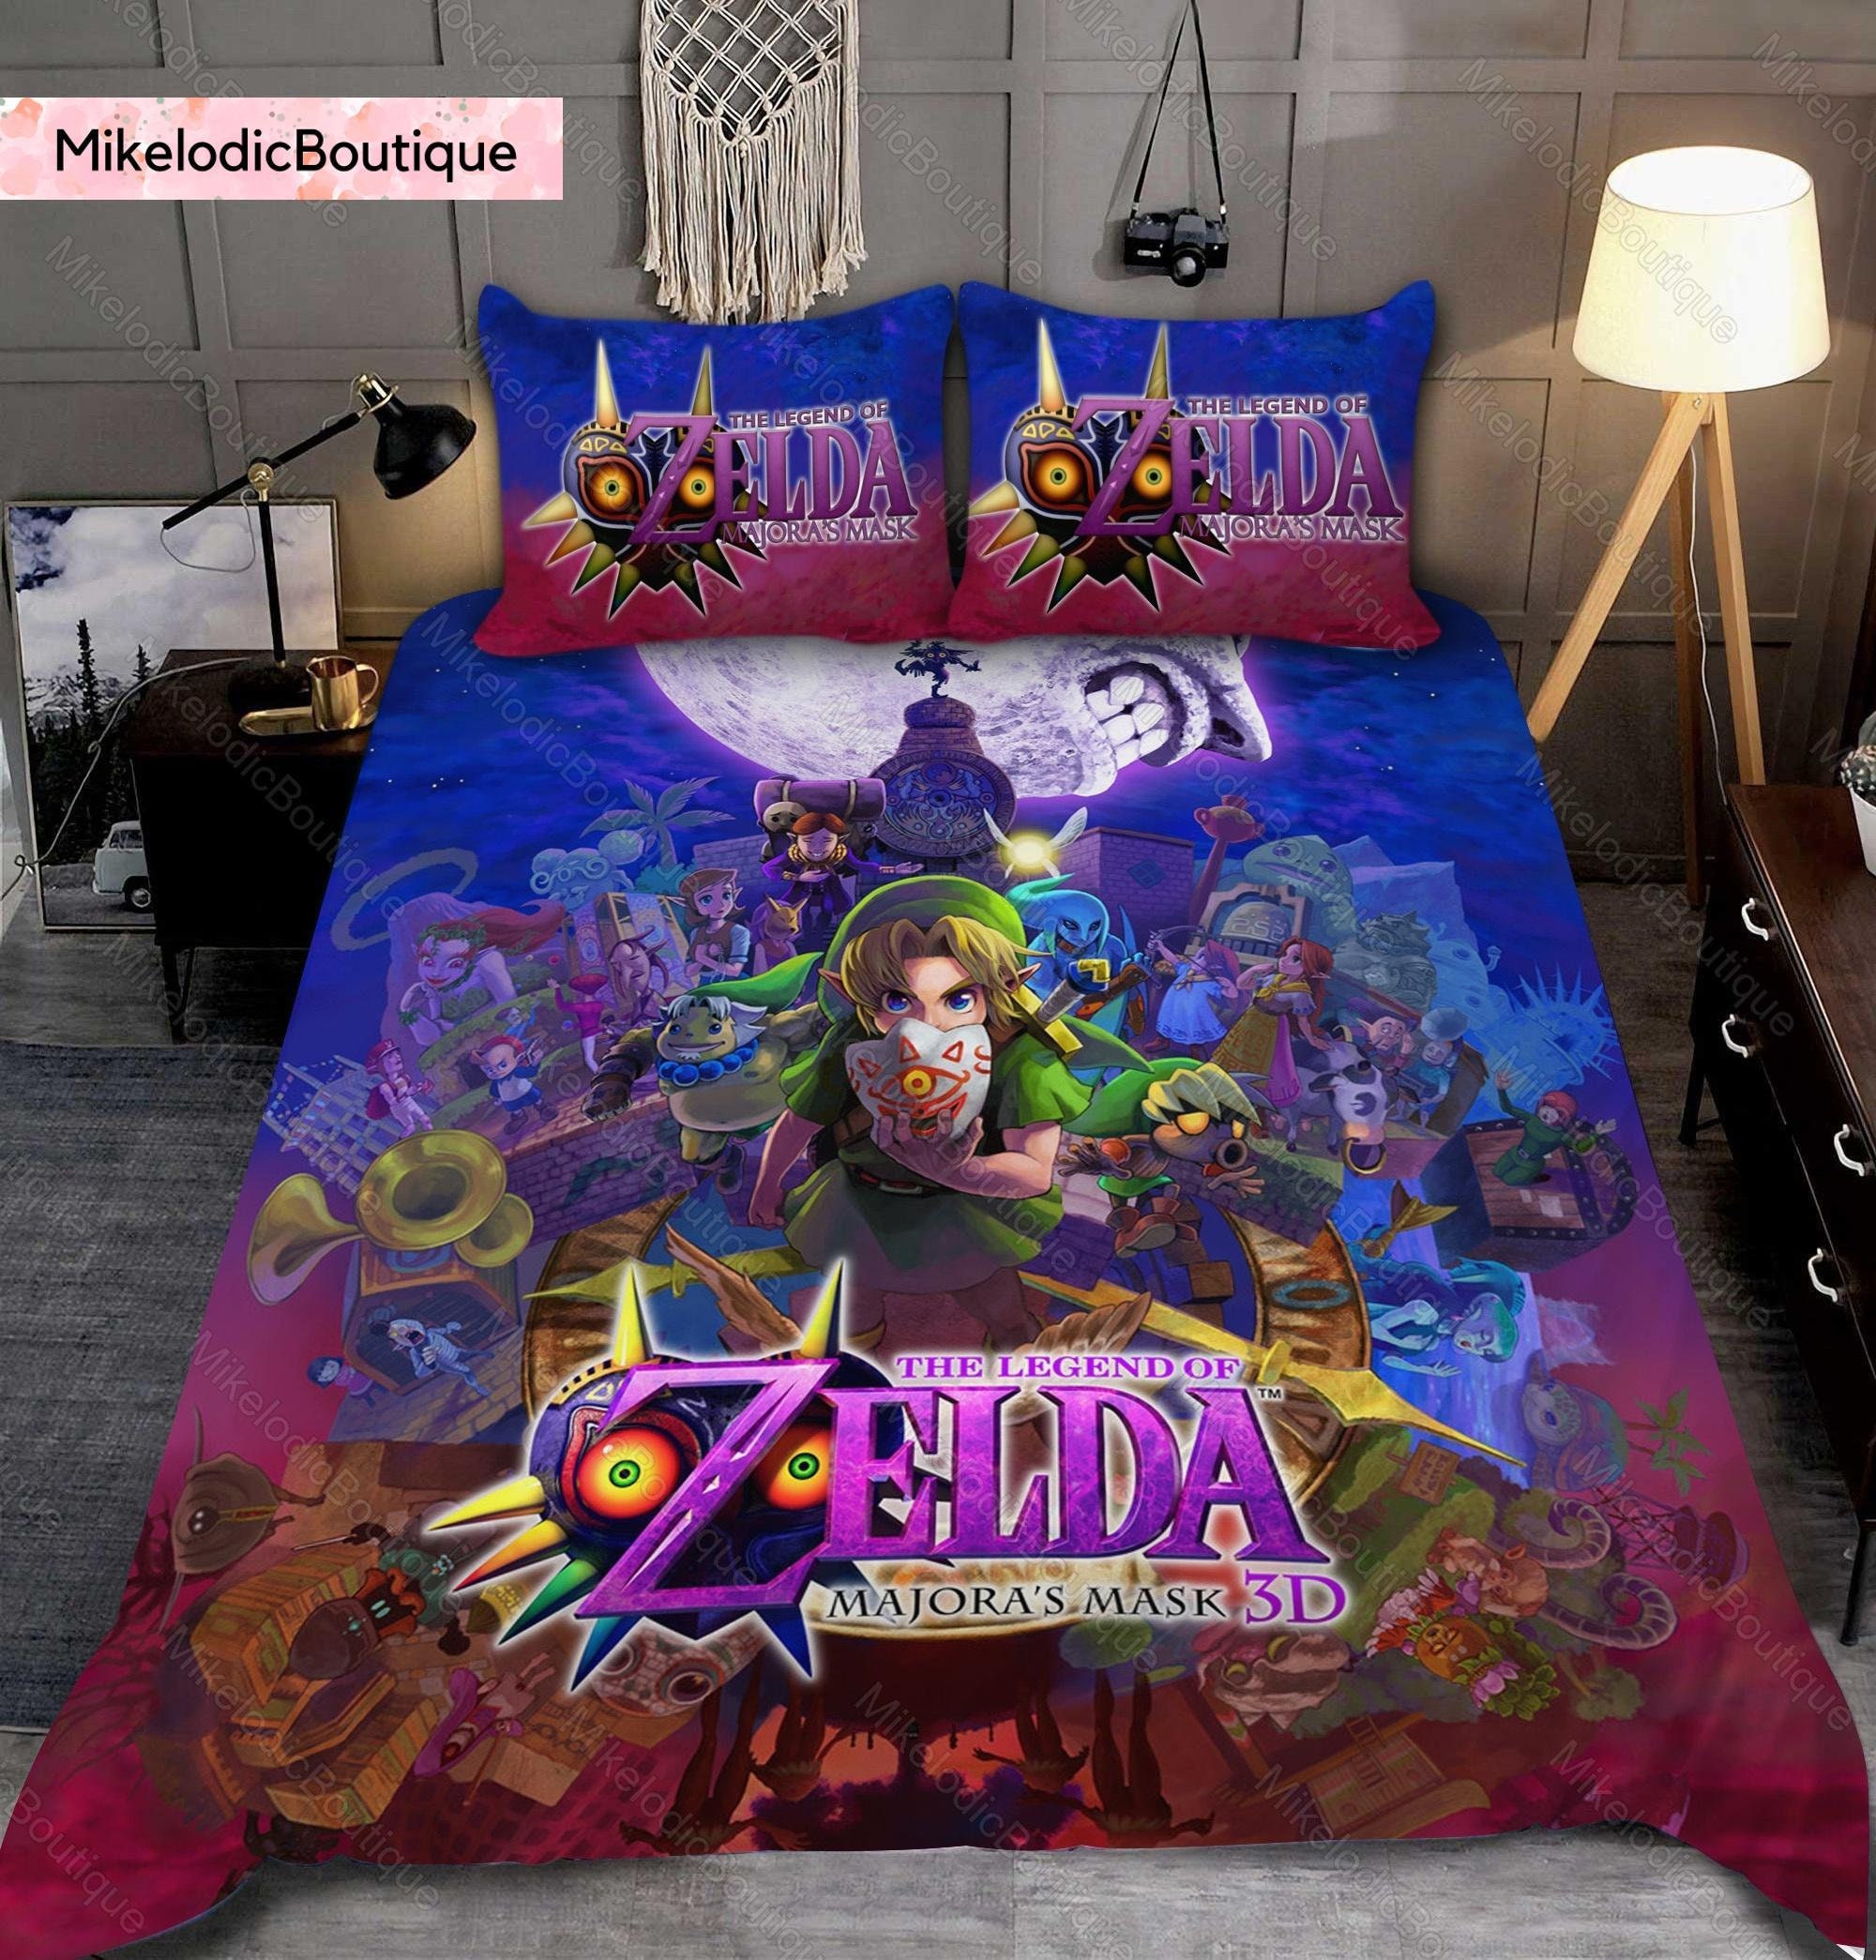 The Legend Of Zelda Bedding Set, The Legend Of Zelda Bedding Sets